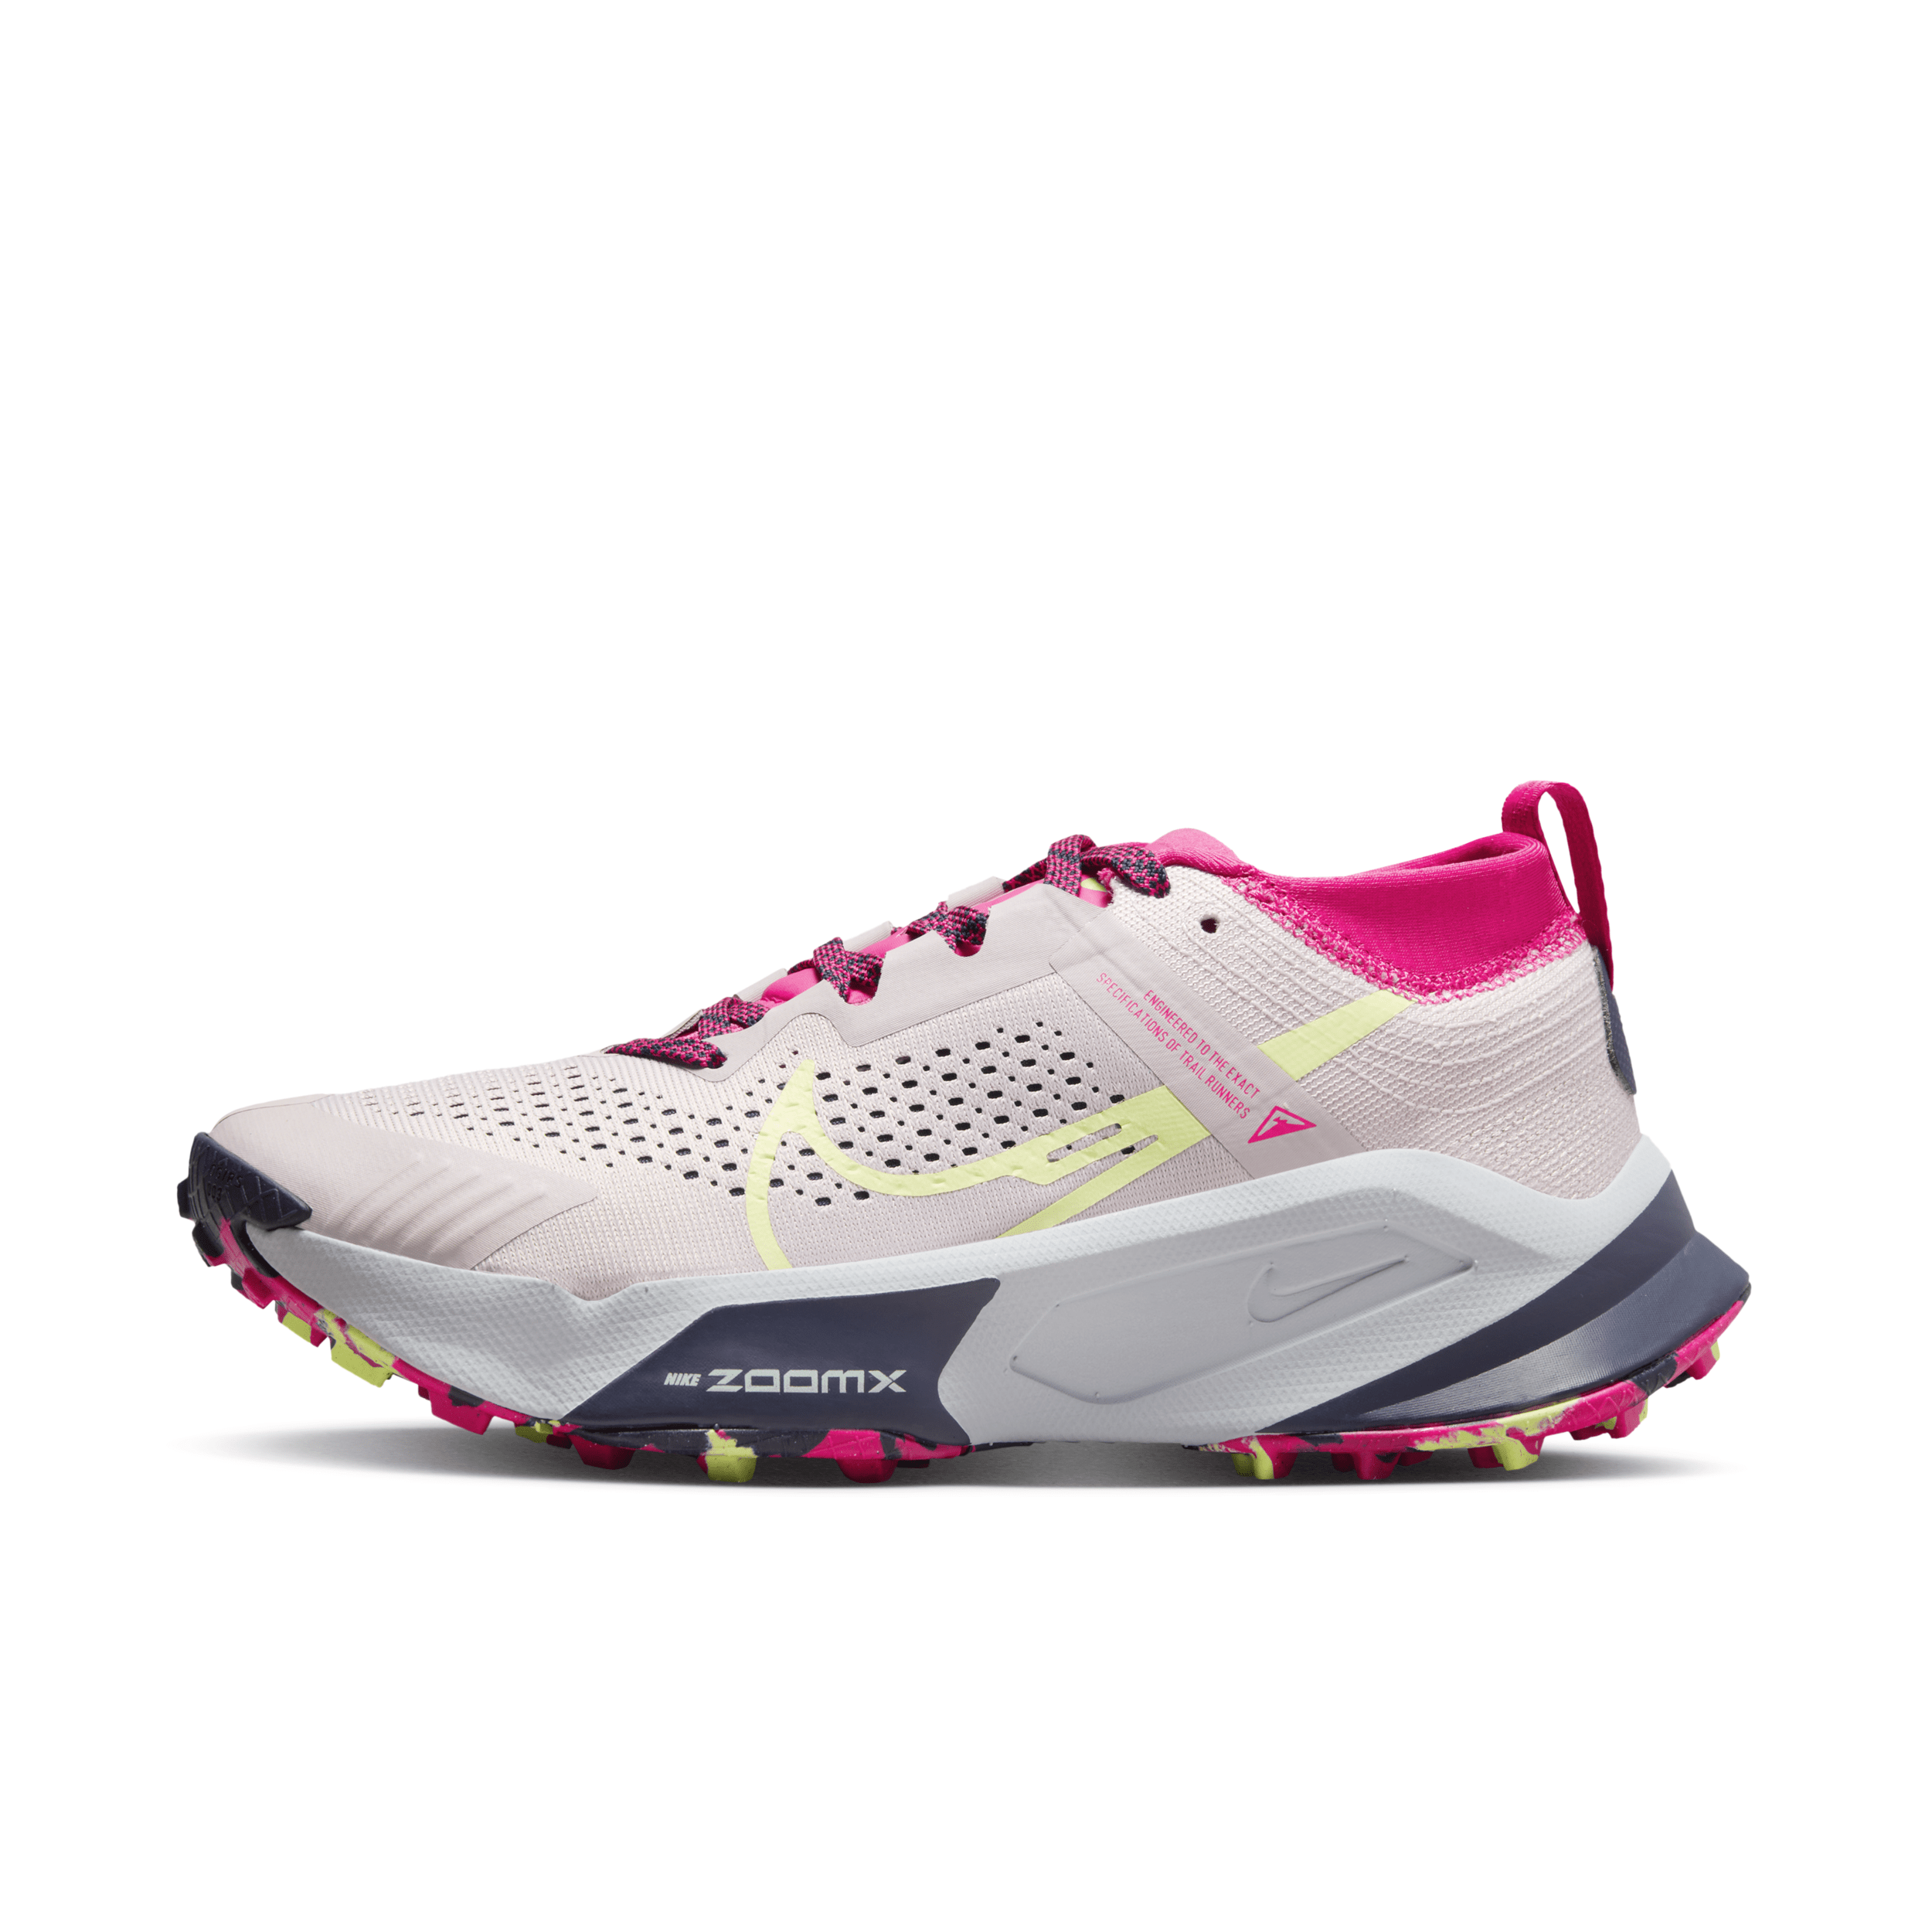 Nike Women's Zegama Trail Running Shoes In Purple